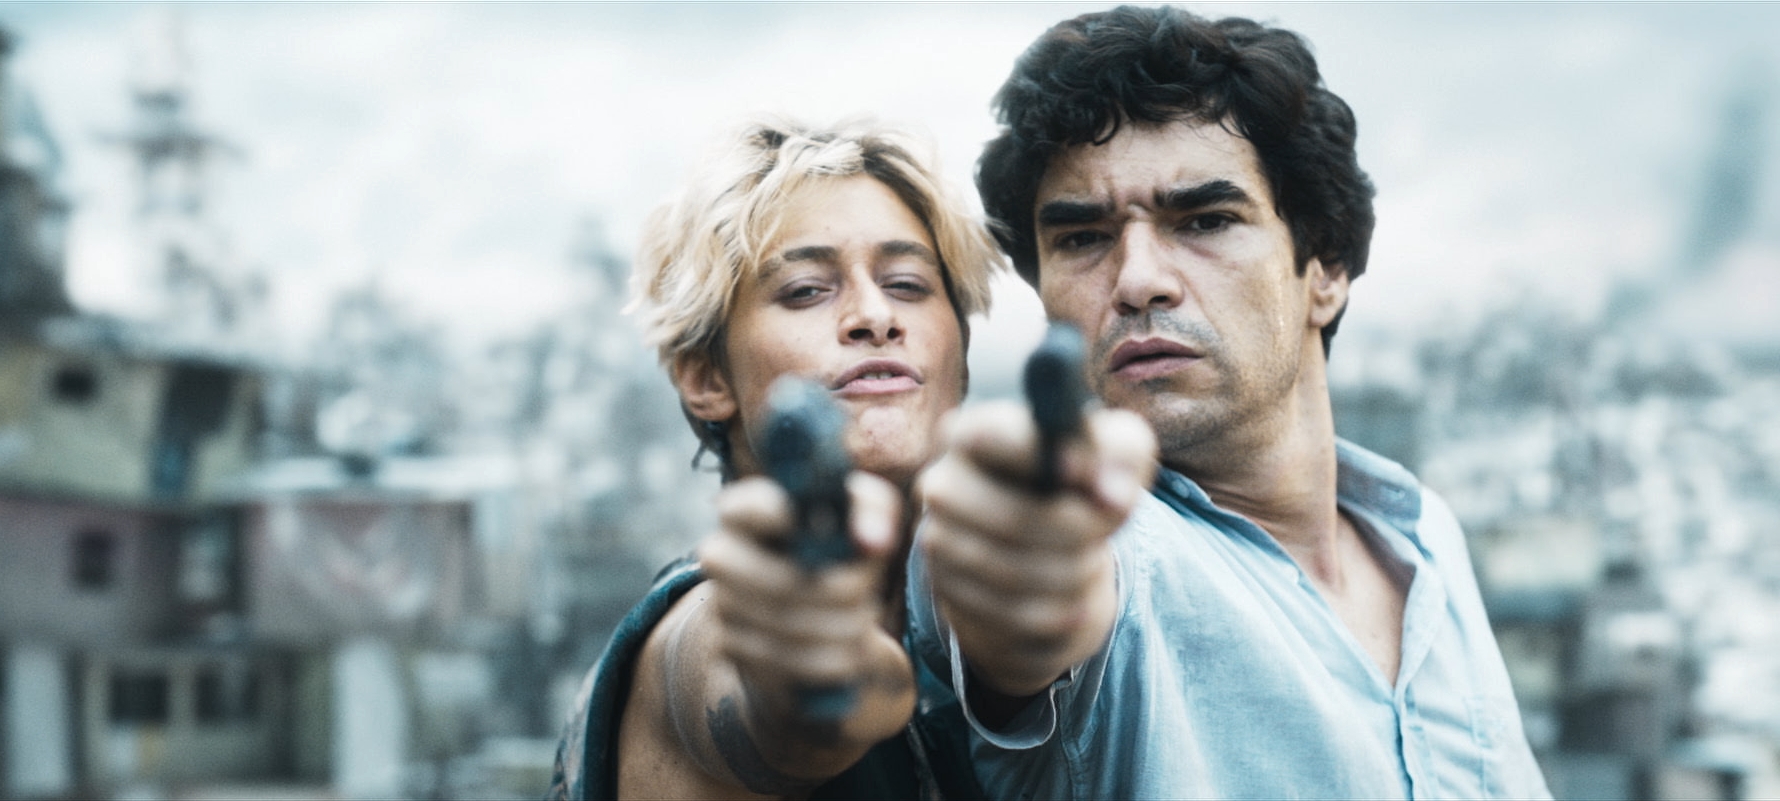 Super-herói brasileiro Overman ganha vida em filme com Caco